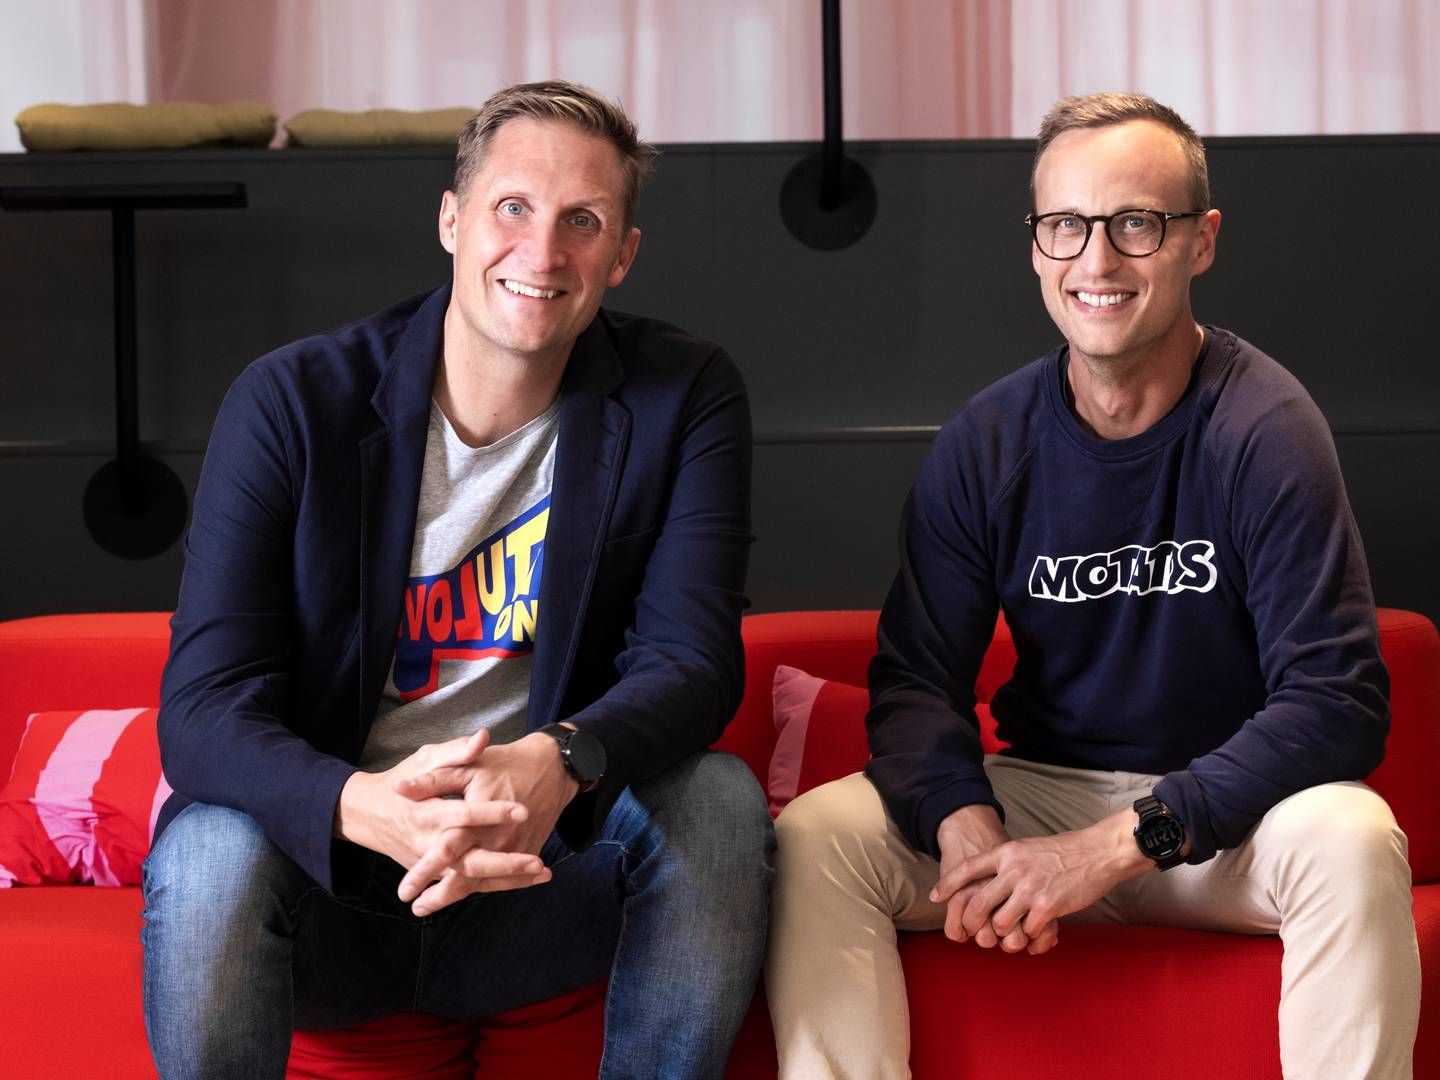 De to adm. direktører i Motatos, Karl Andersson (t.v.) og Peter Beckius (t.h.) | Foto: Pr